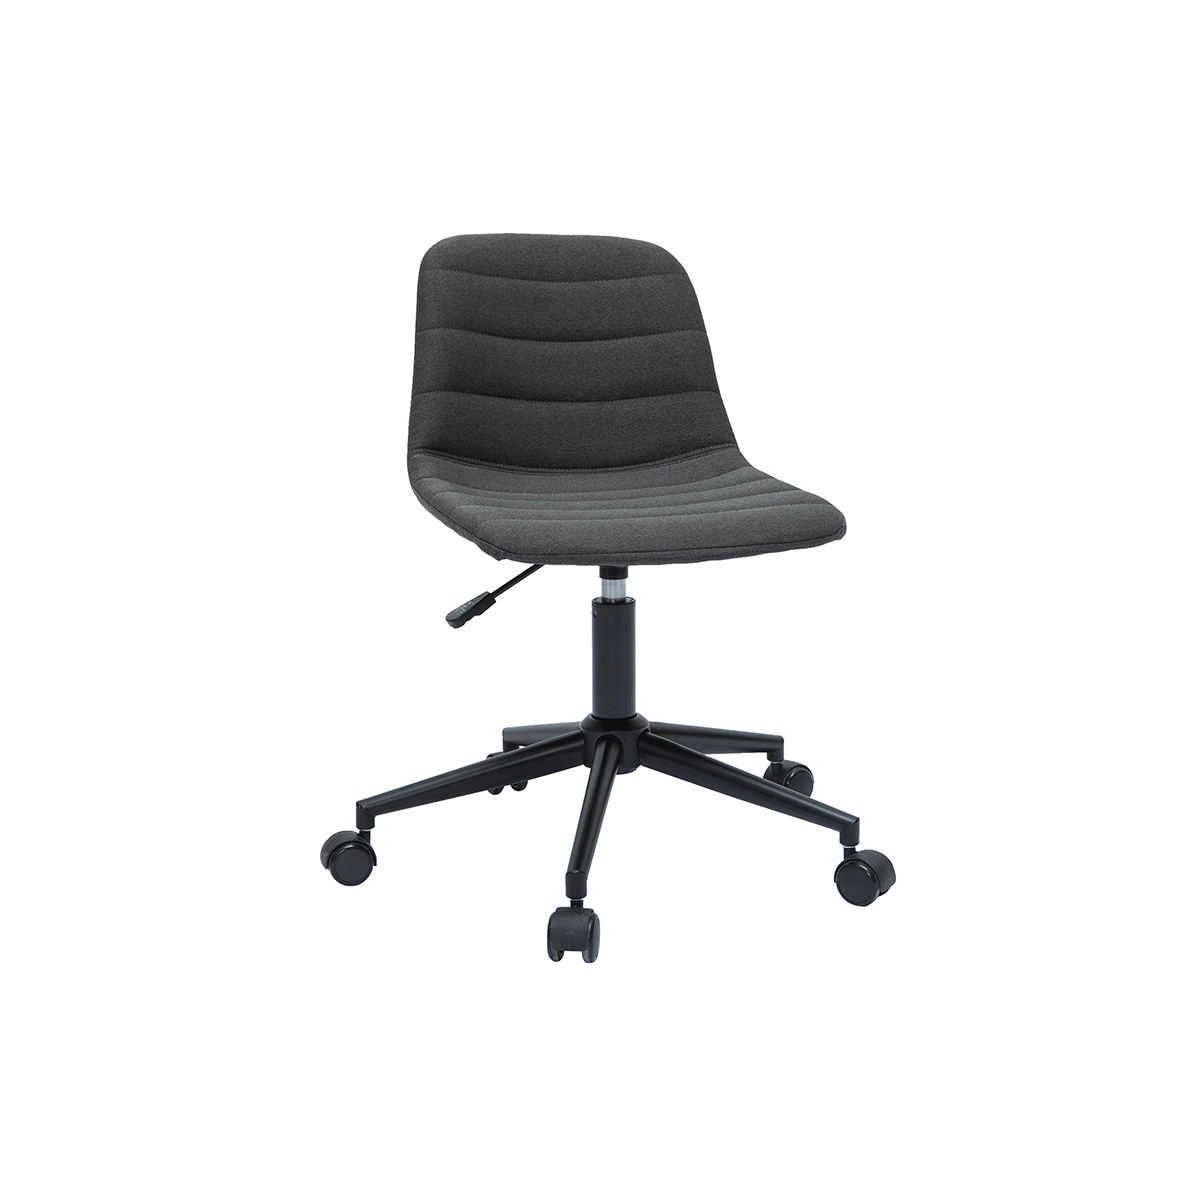 Chaise de bureau à roulettes design en tissu gris anthracite et métal noir SAURY vue1